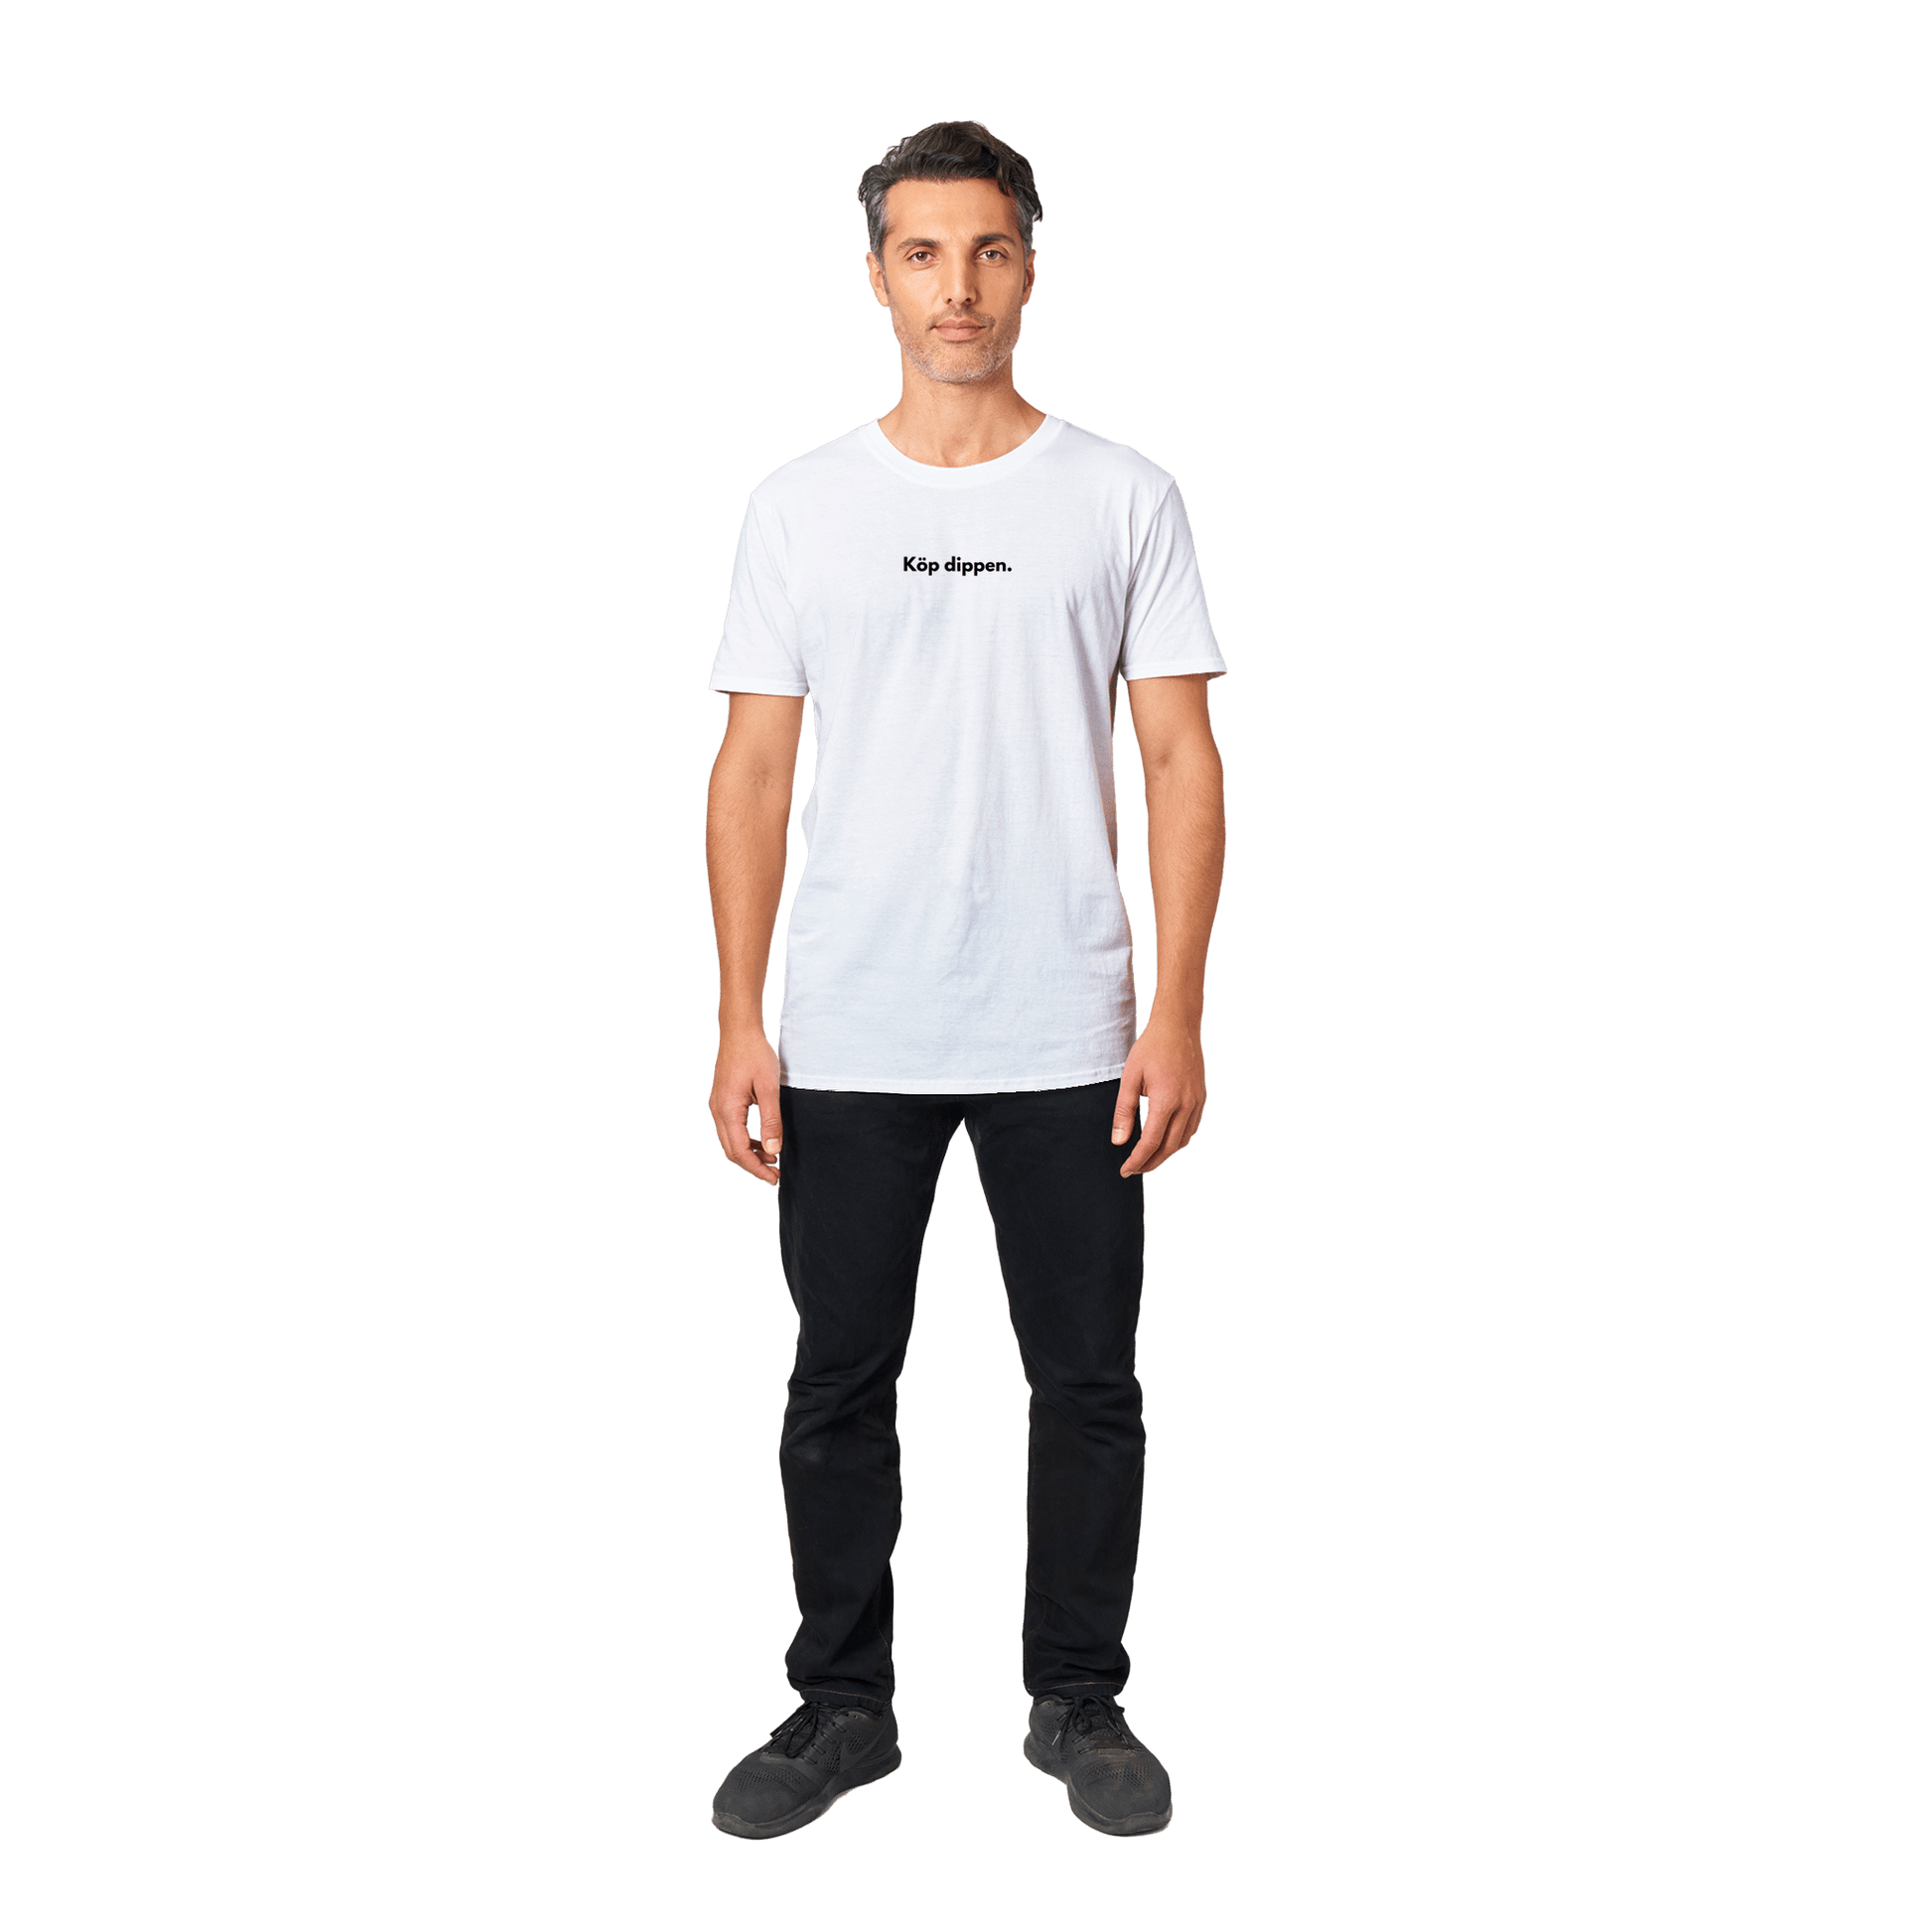 Köp dippen - T-shirt 